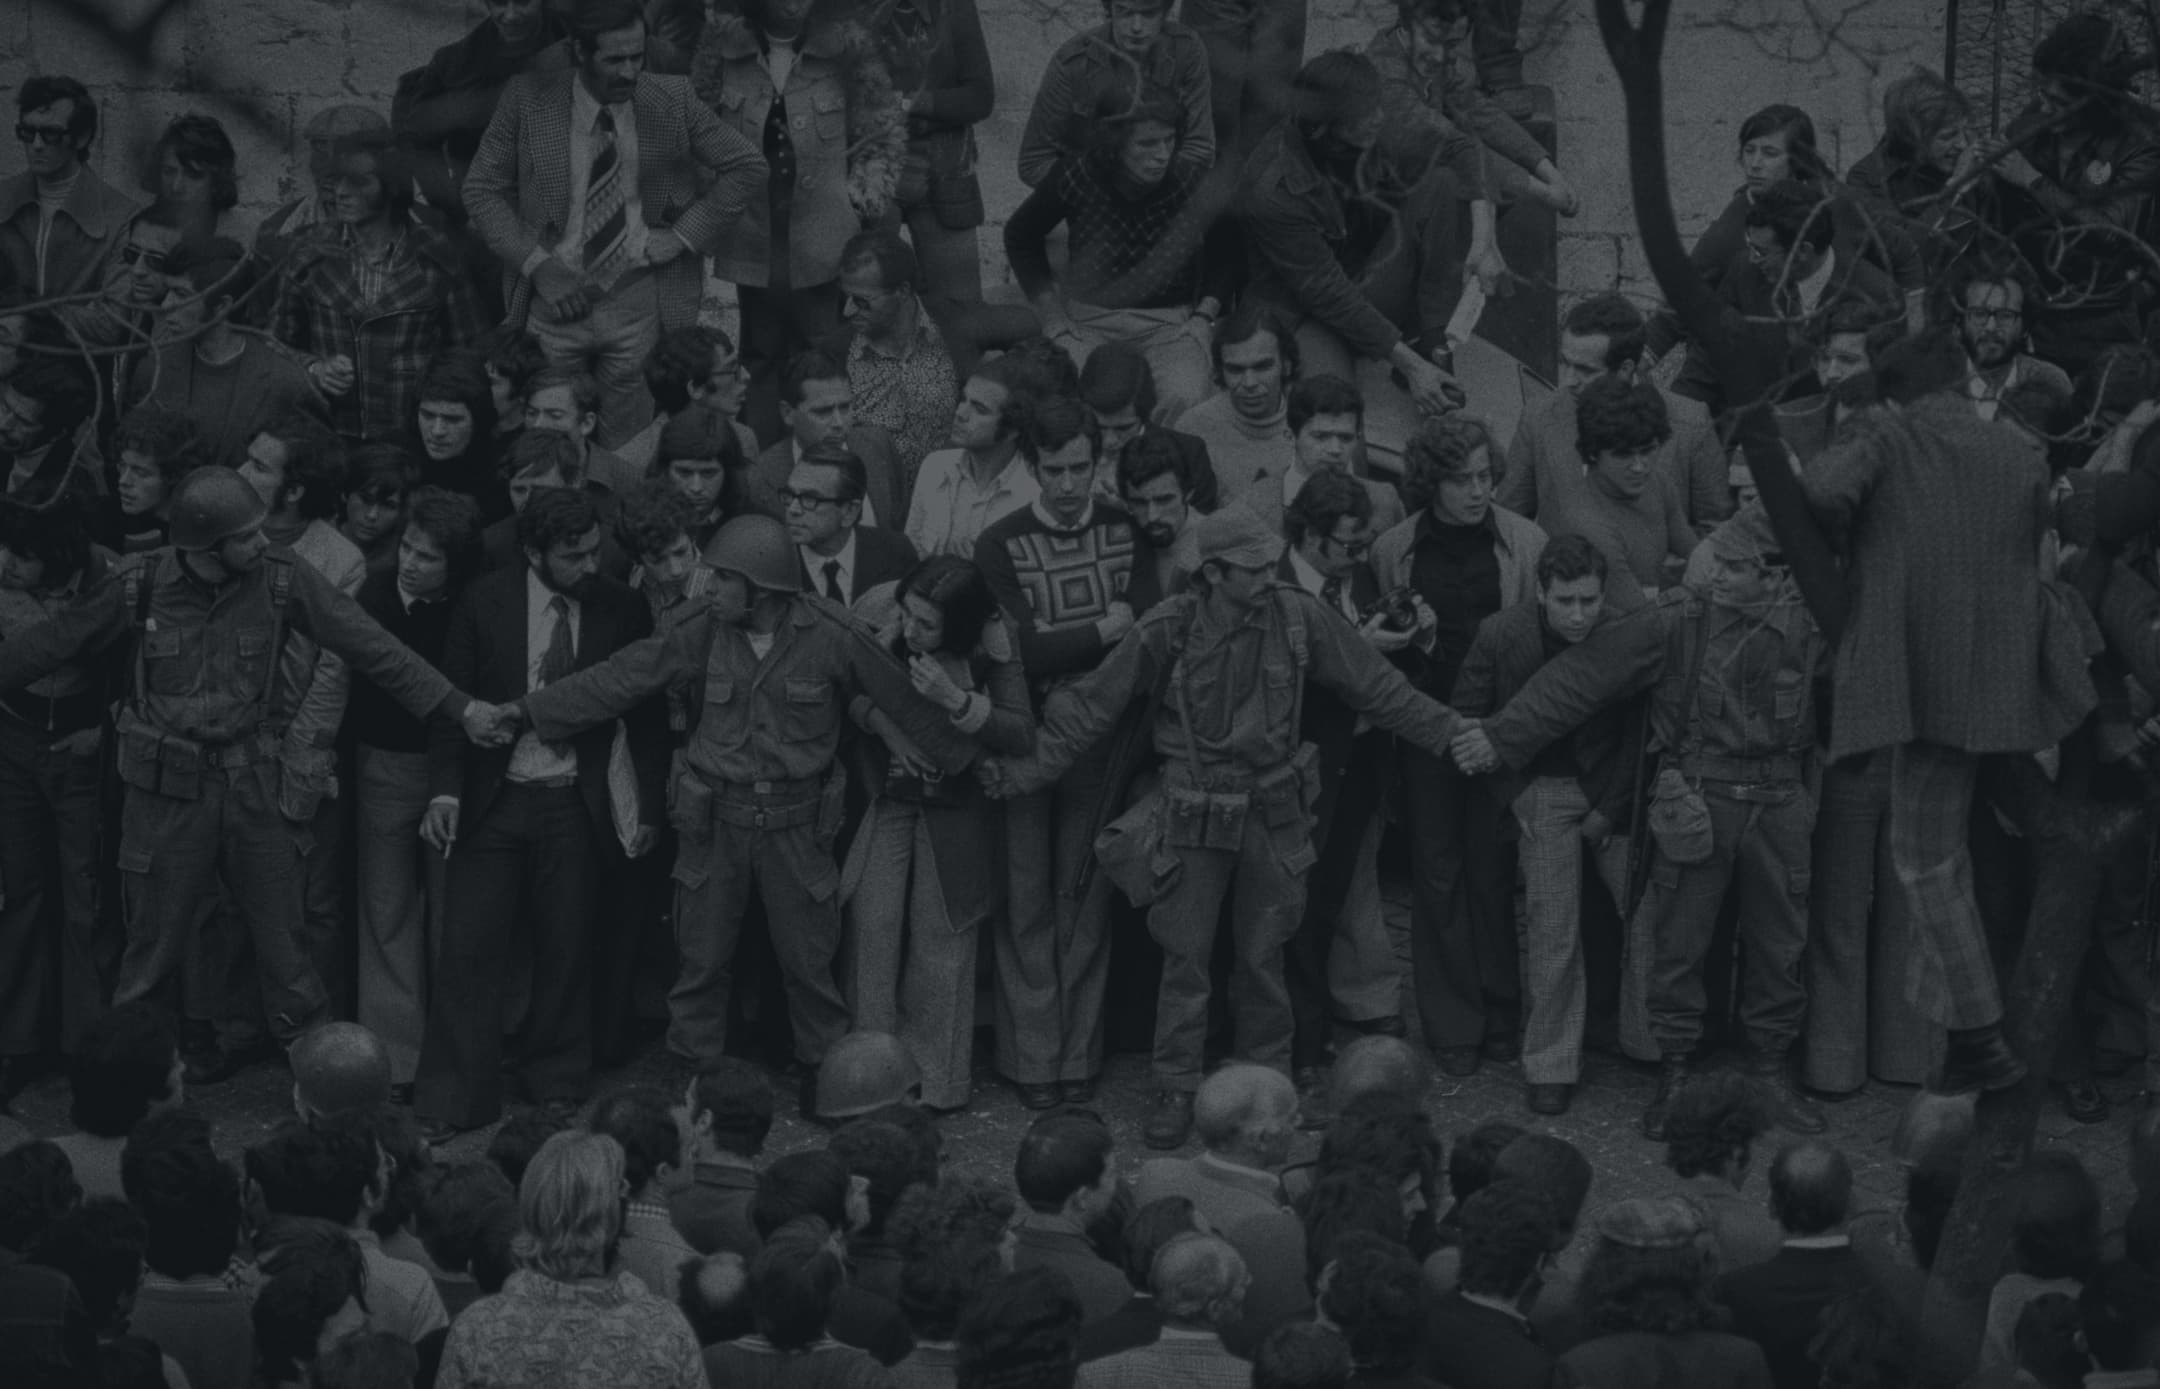 Foto da multidão no Largo do Carmo no 25 de Abril